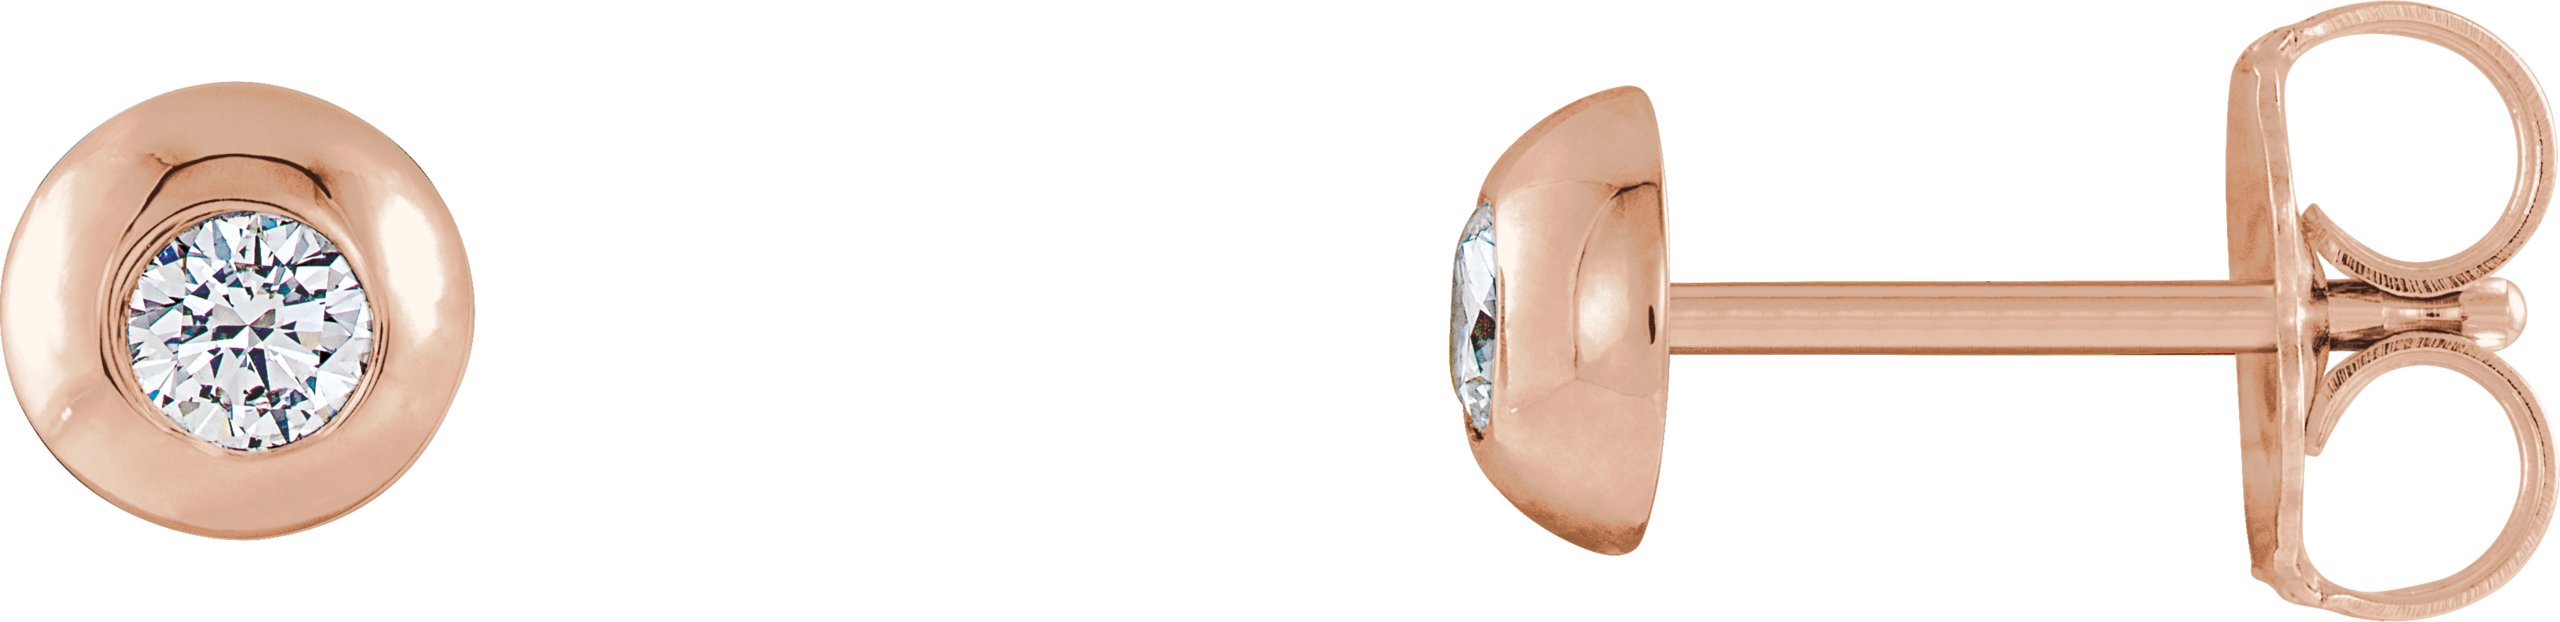 14K Rose .125 CTW Diamond Domed Stud Earrings Ref. 13314786